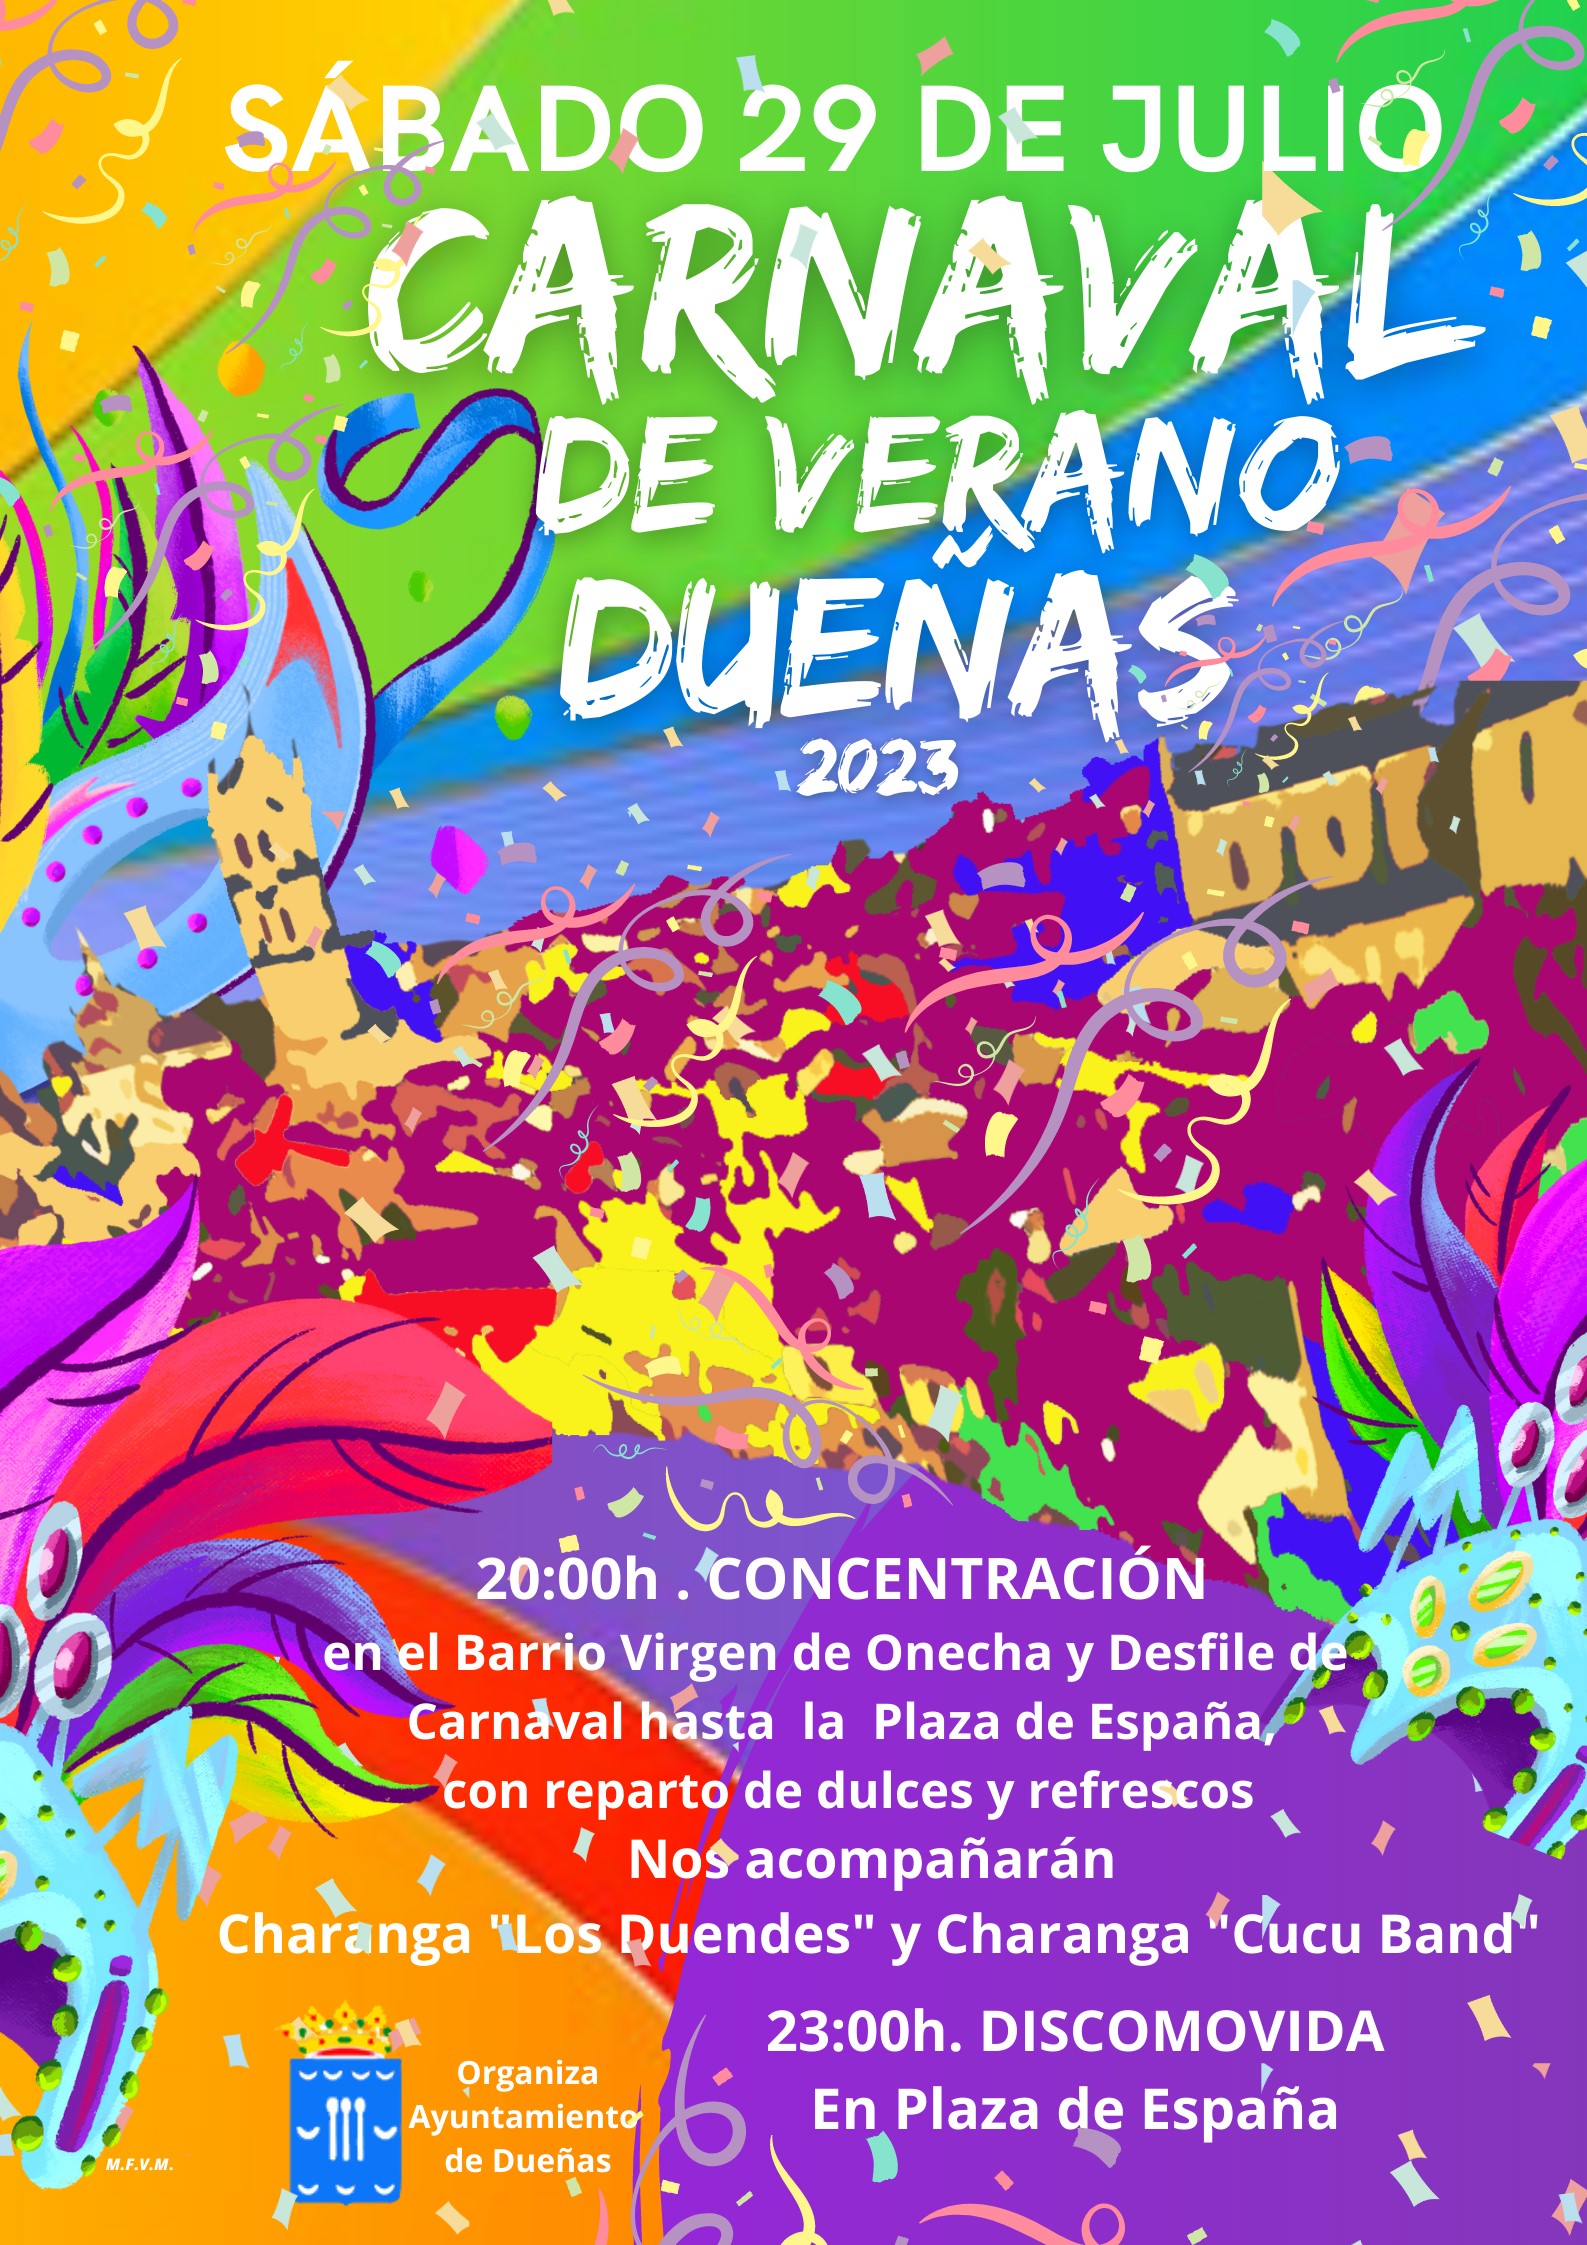 29 de julio: Carnaval de Verano